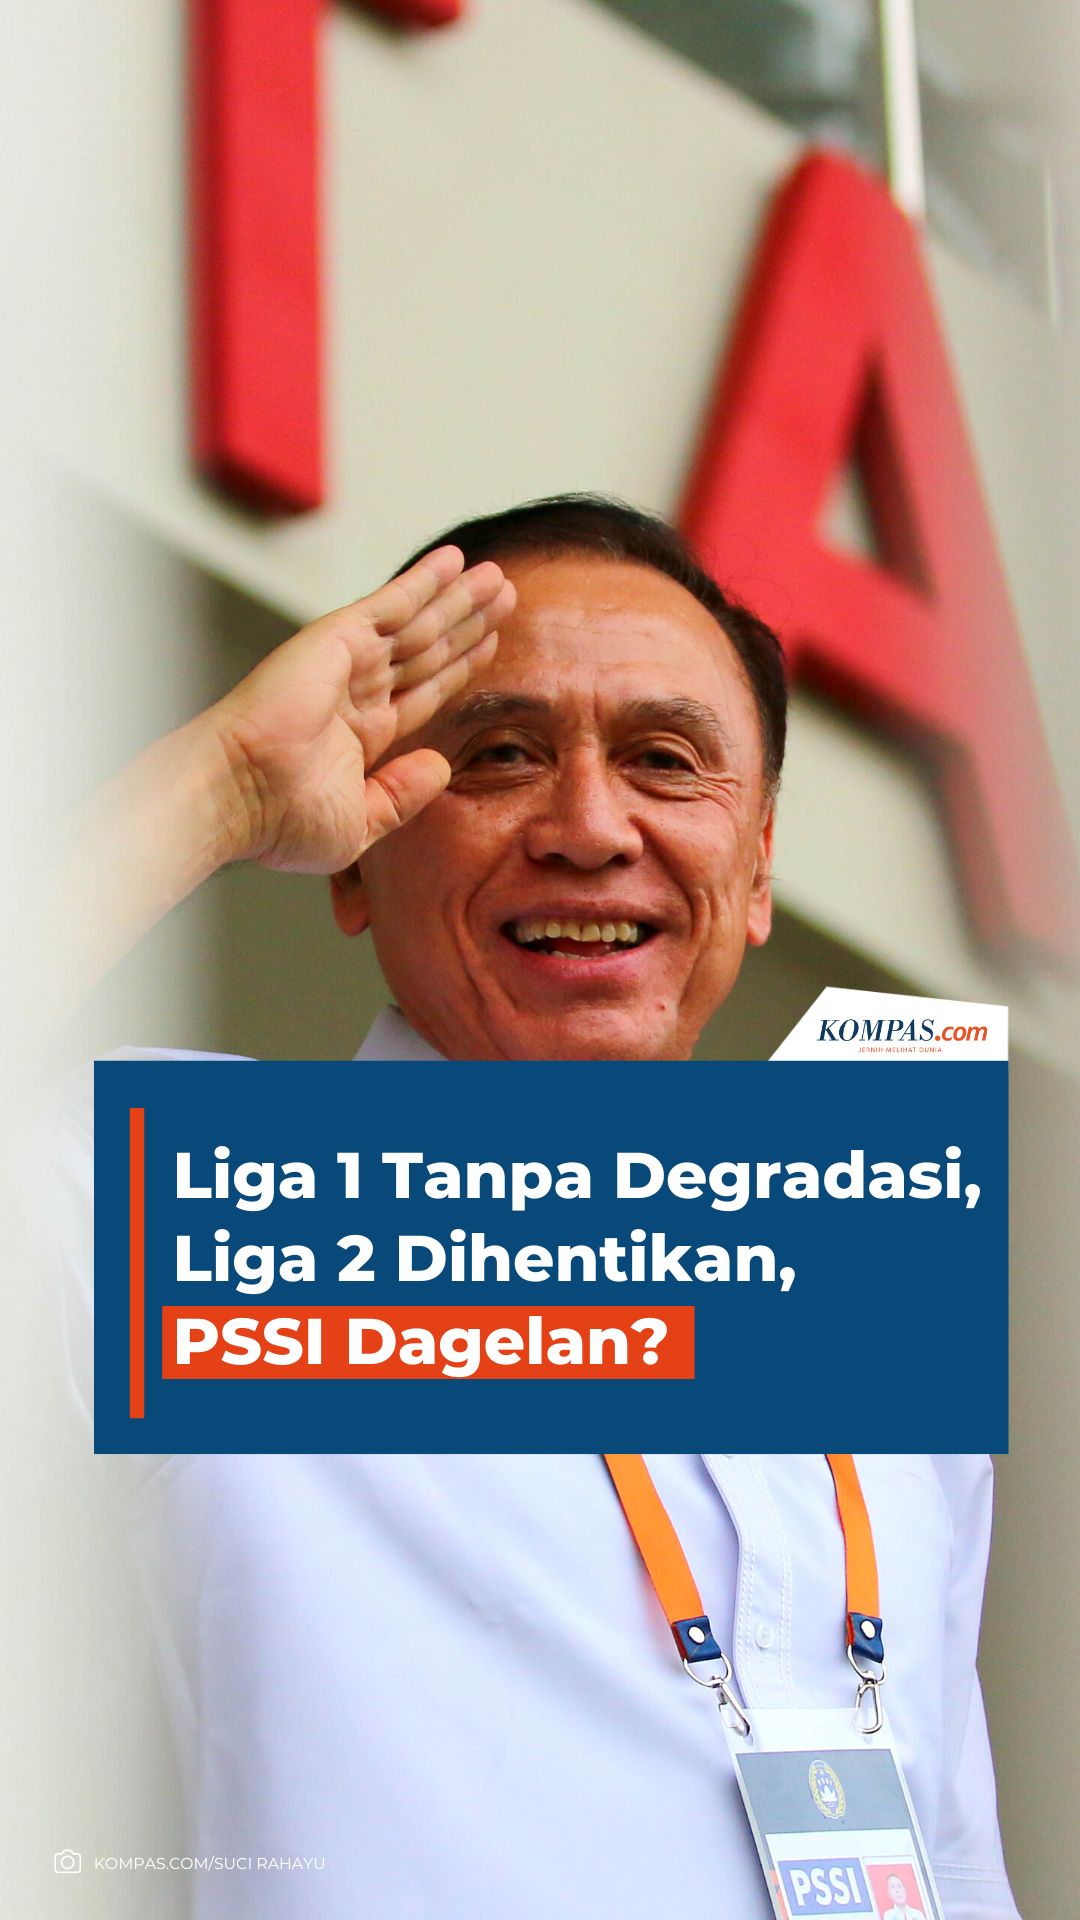 Liga 1 Tanpa Degradasi, Liga 2 Dihentikan, PSSI Dagelan?